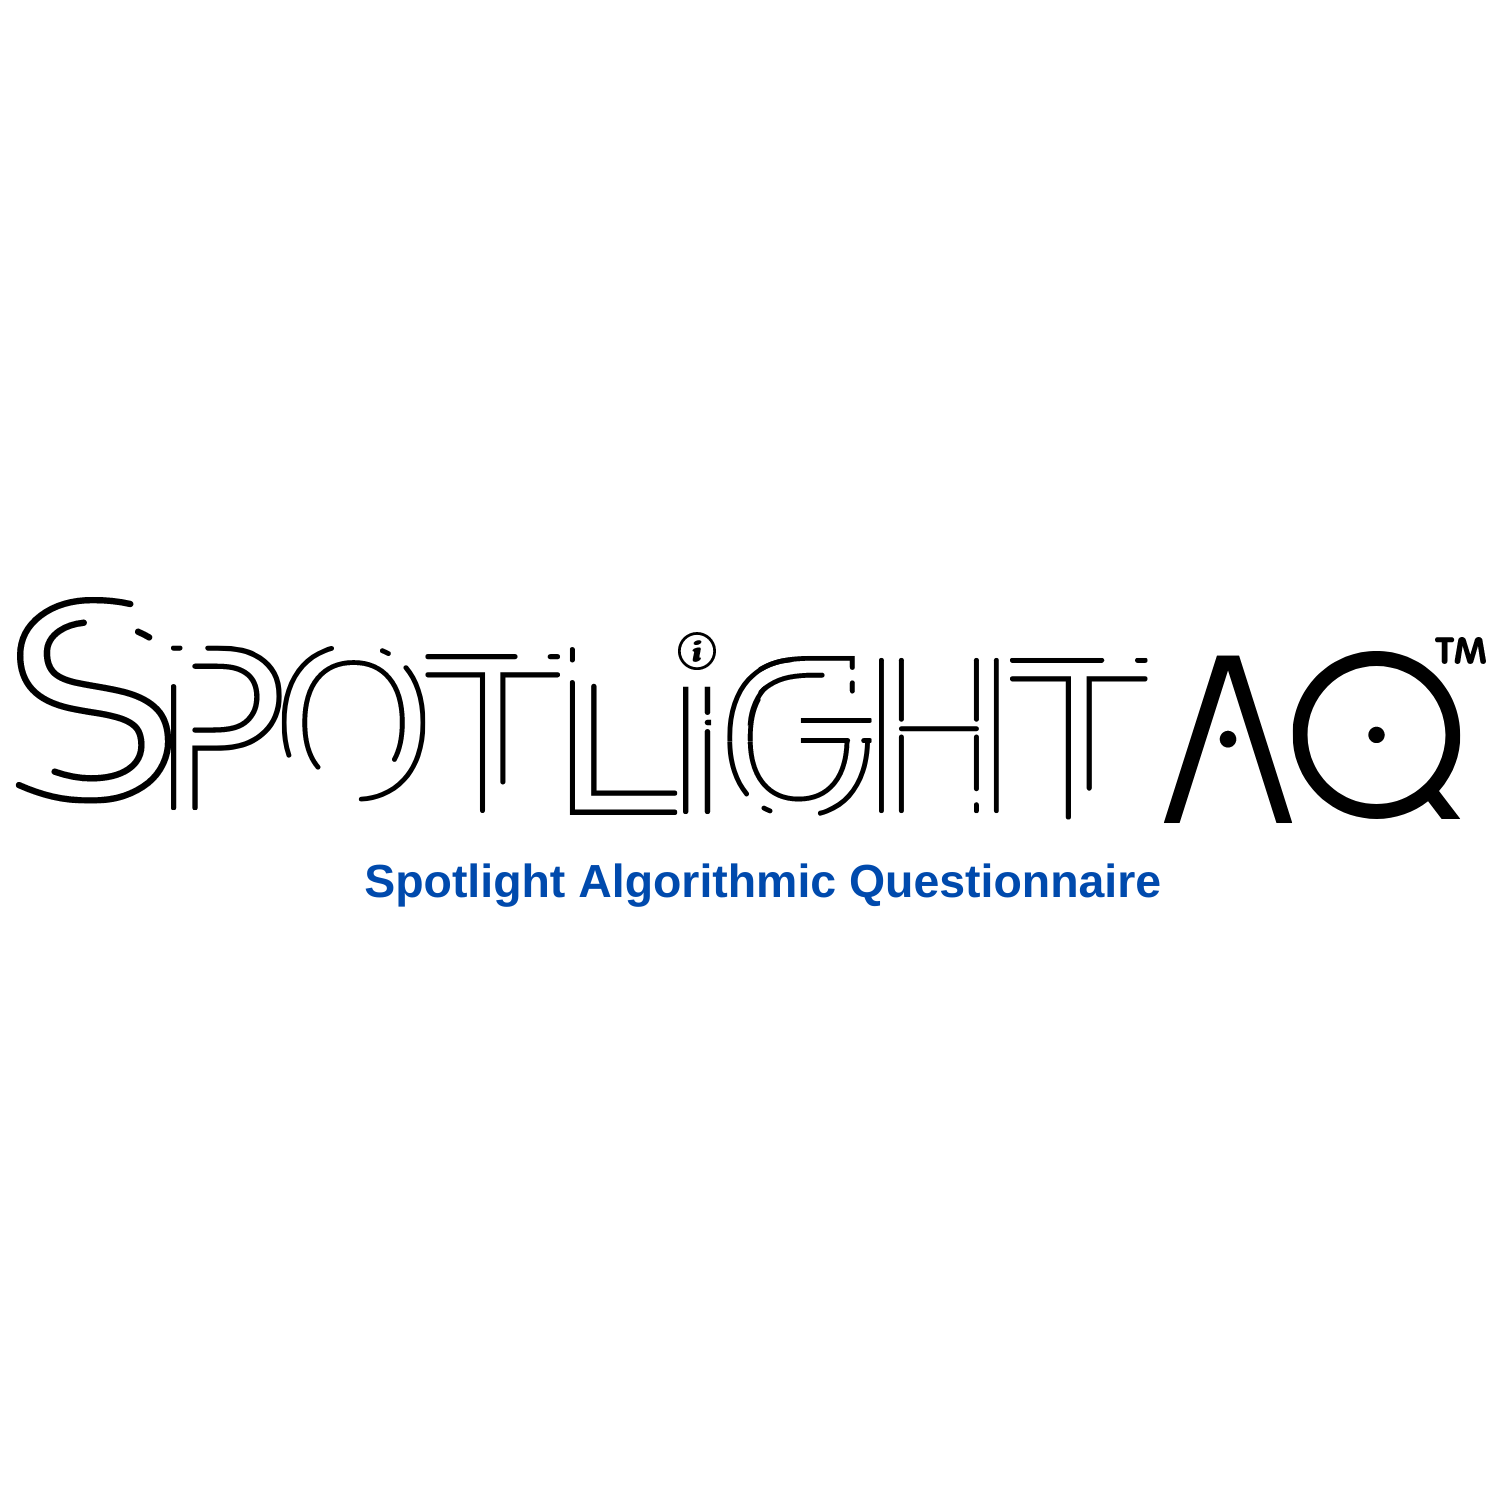 Spotlight-AQ